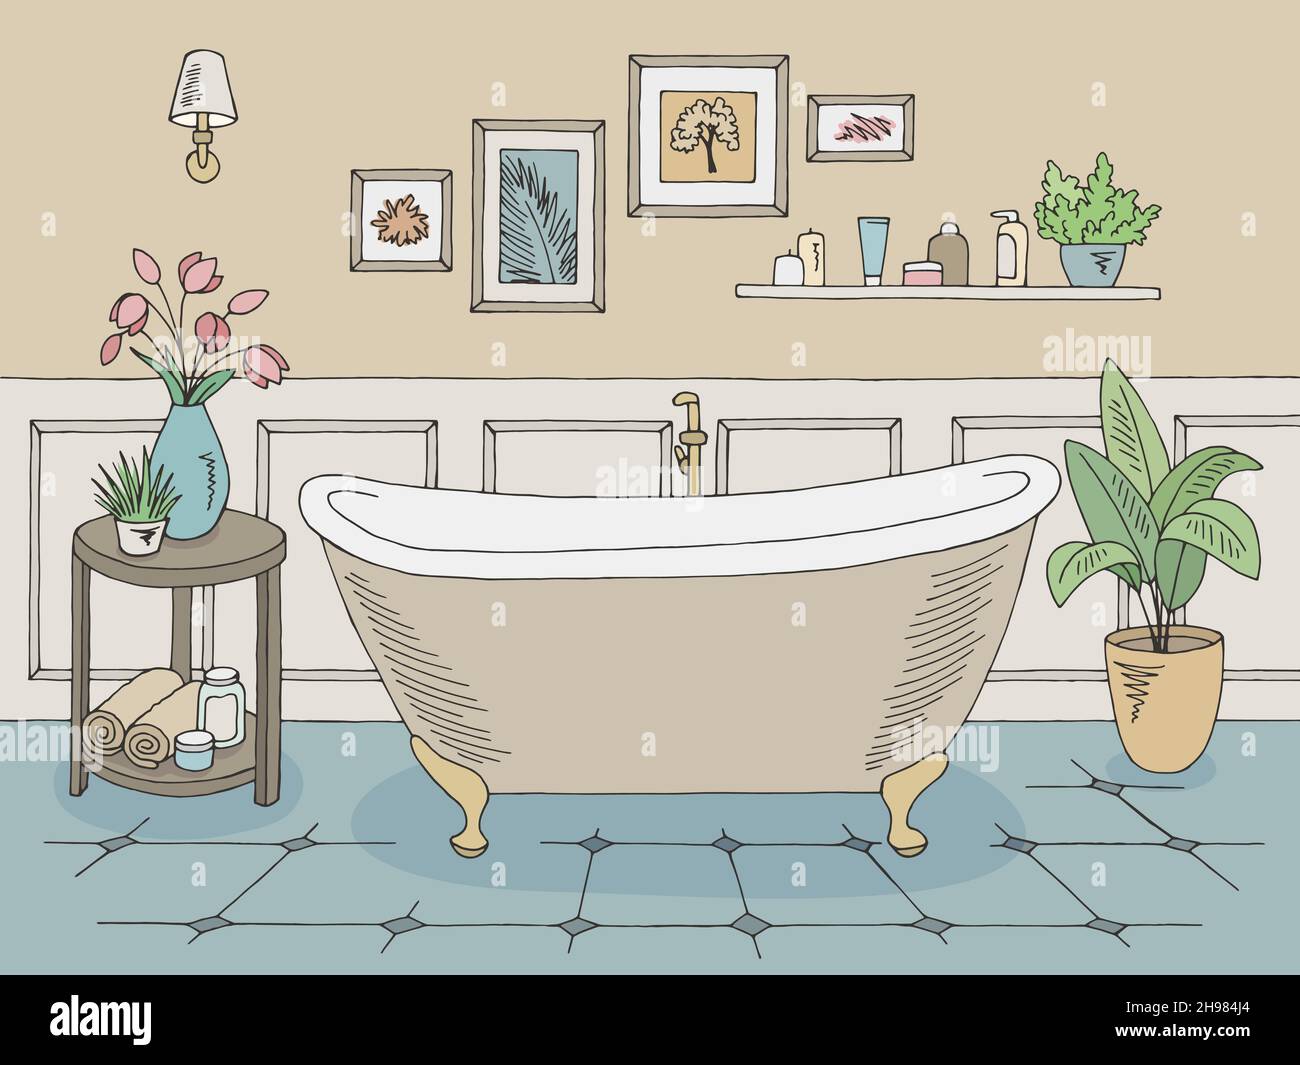 Bathroom graphic home interior color sketch illustration vector Stock Vector